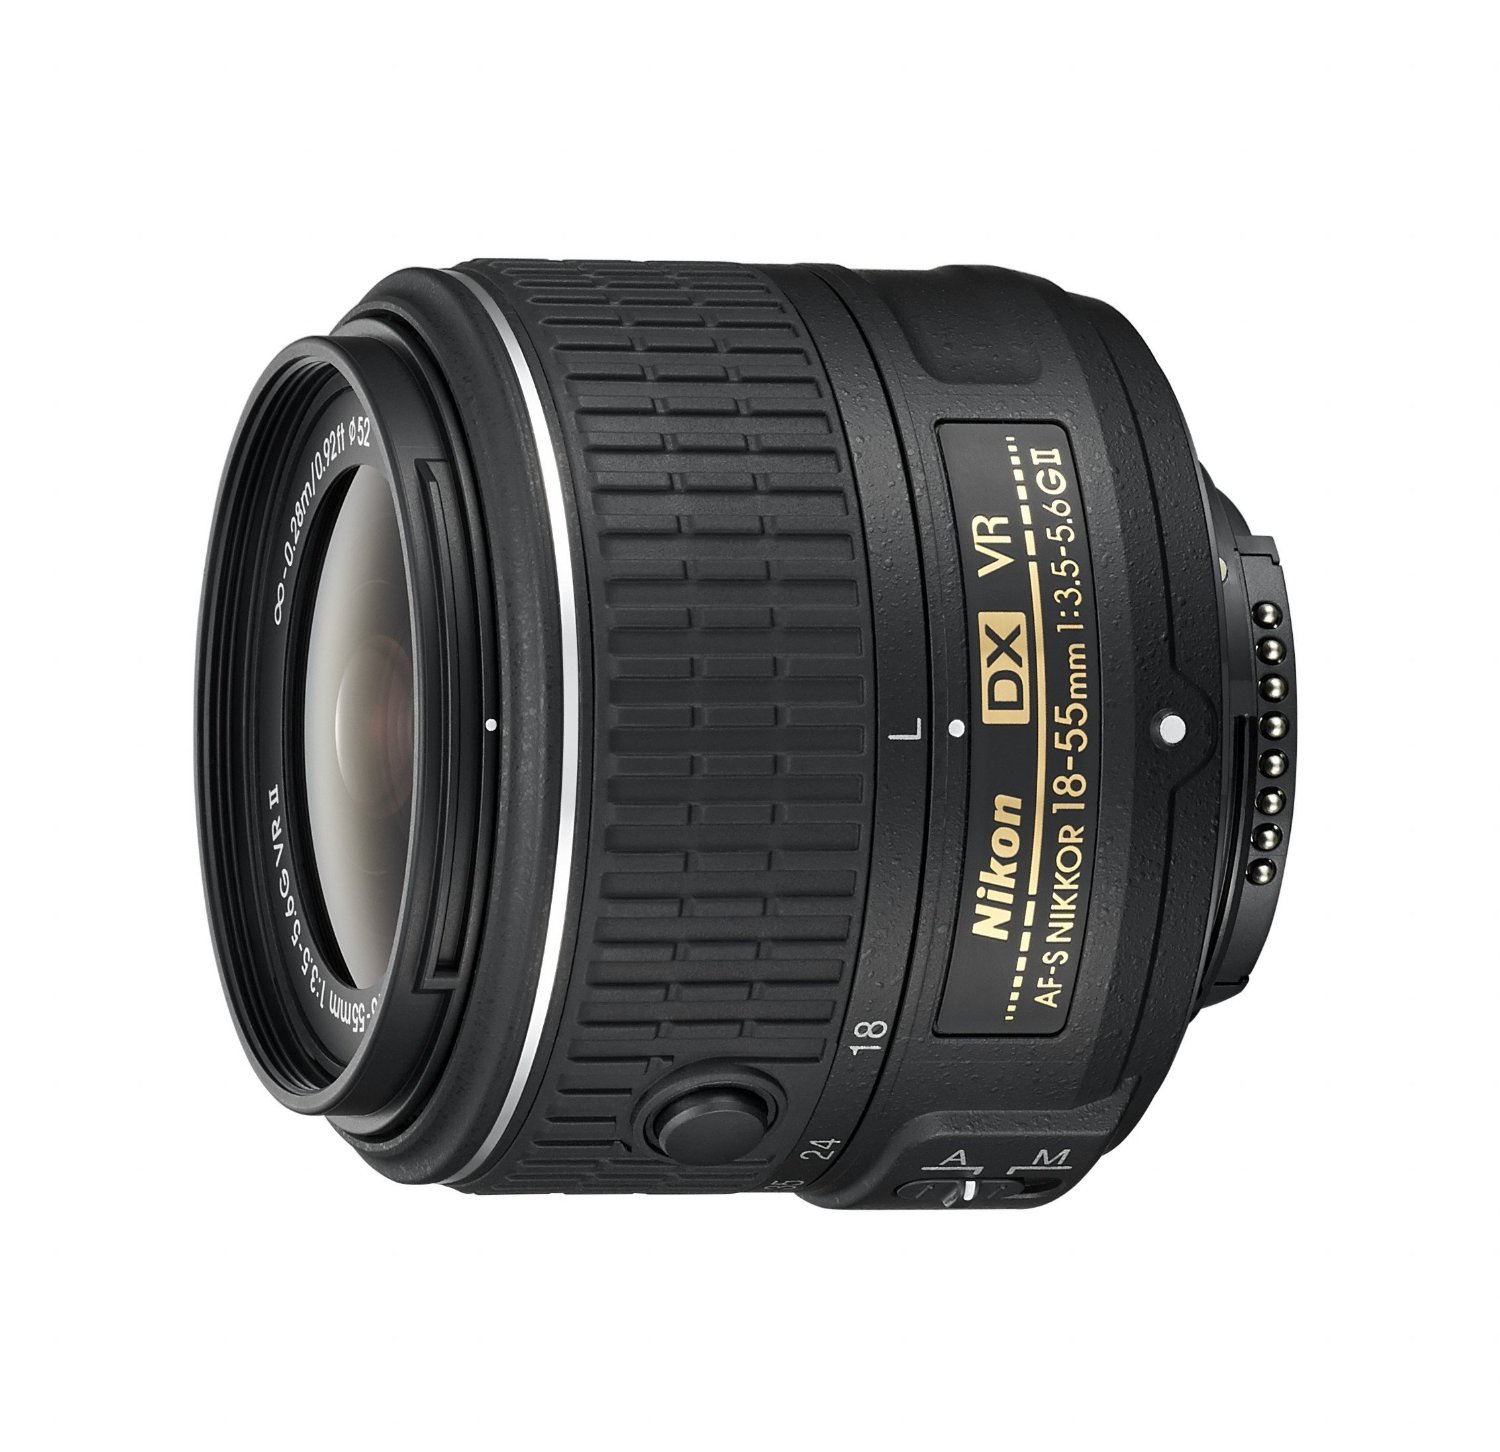 Nikon 18-55mm f/3.5-5.6G VR II AF-S DX NIKKOR Zoom Lens